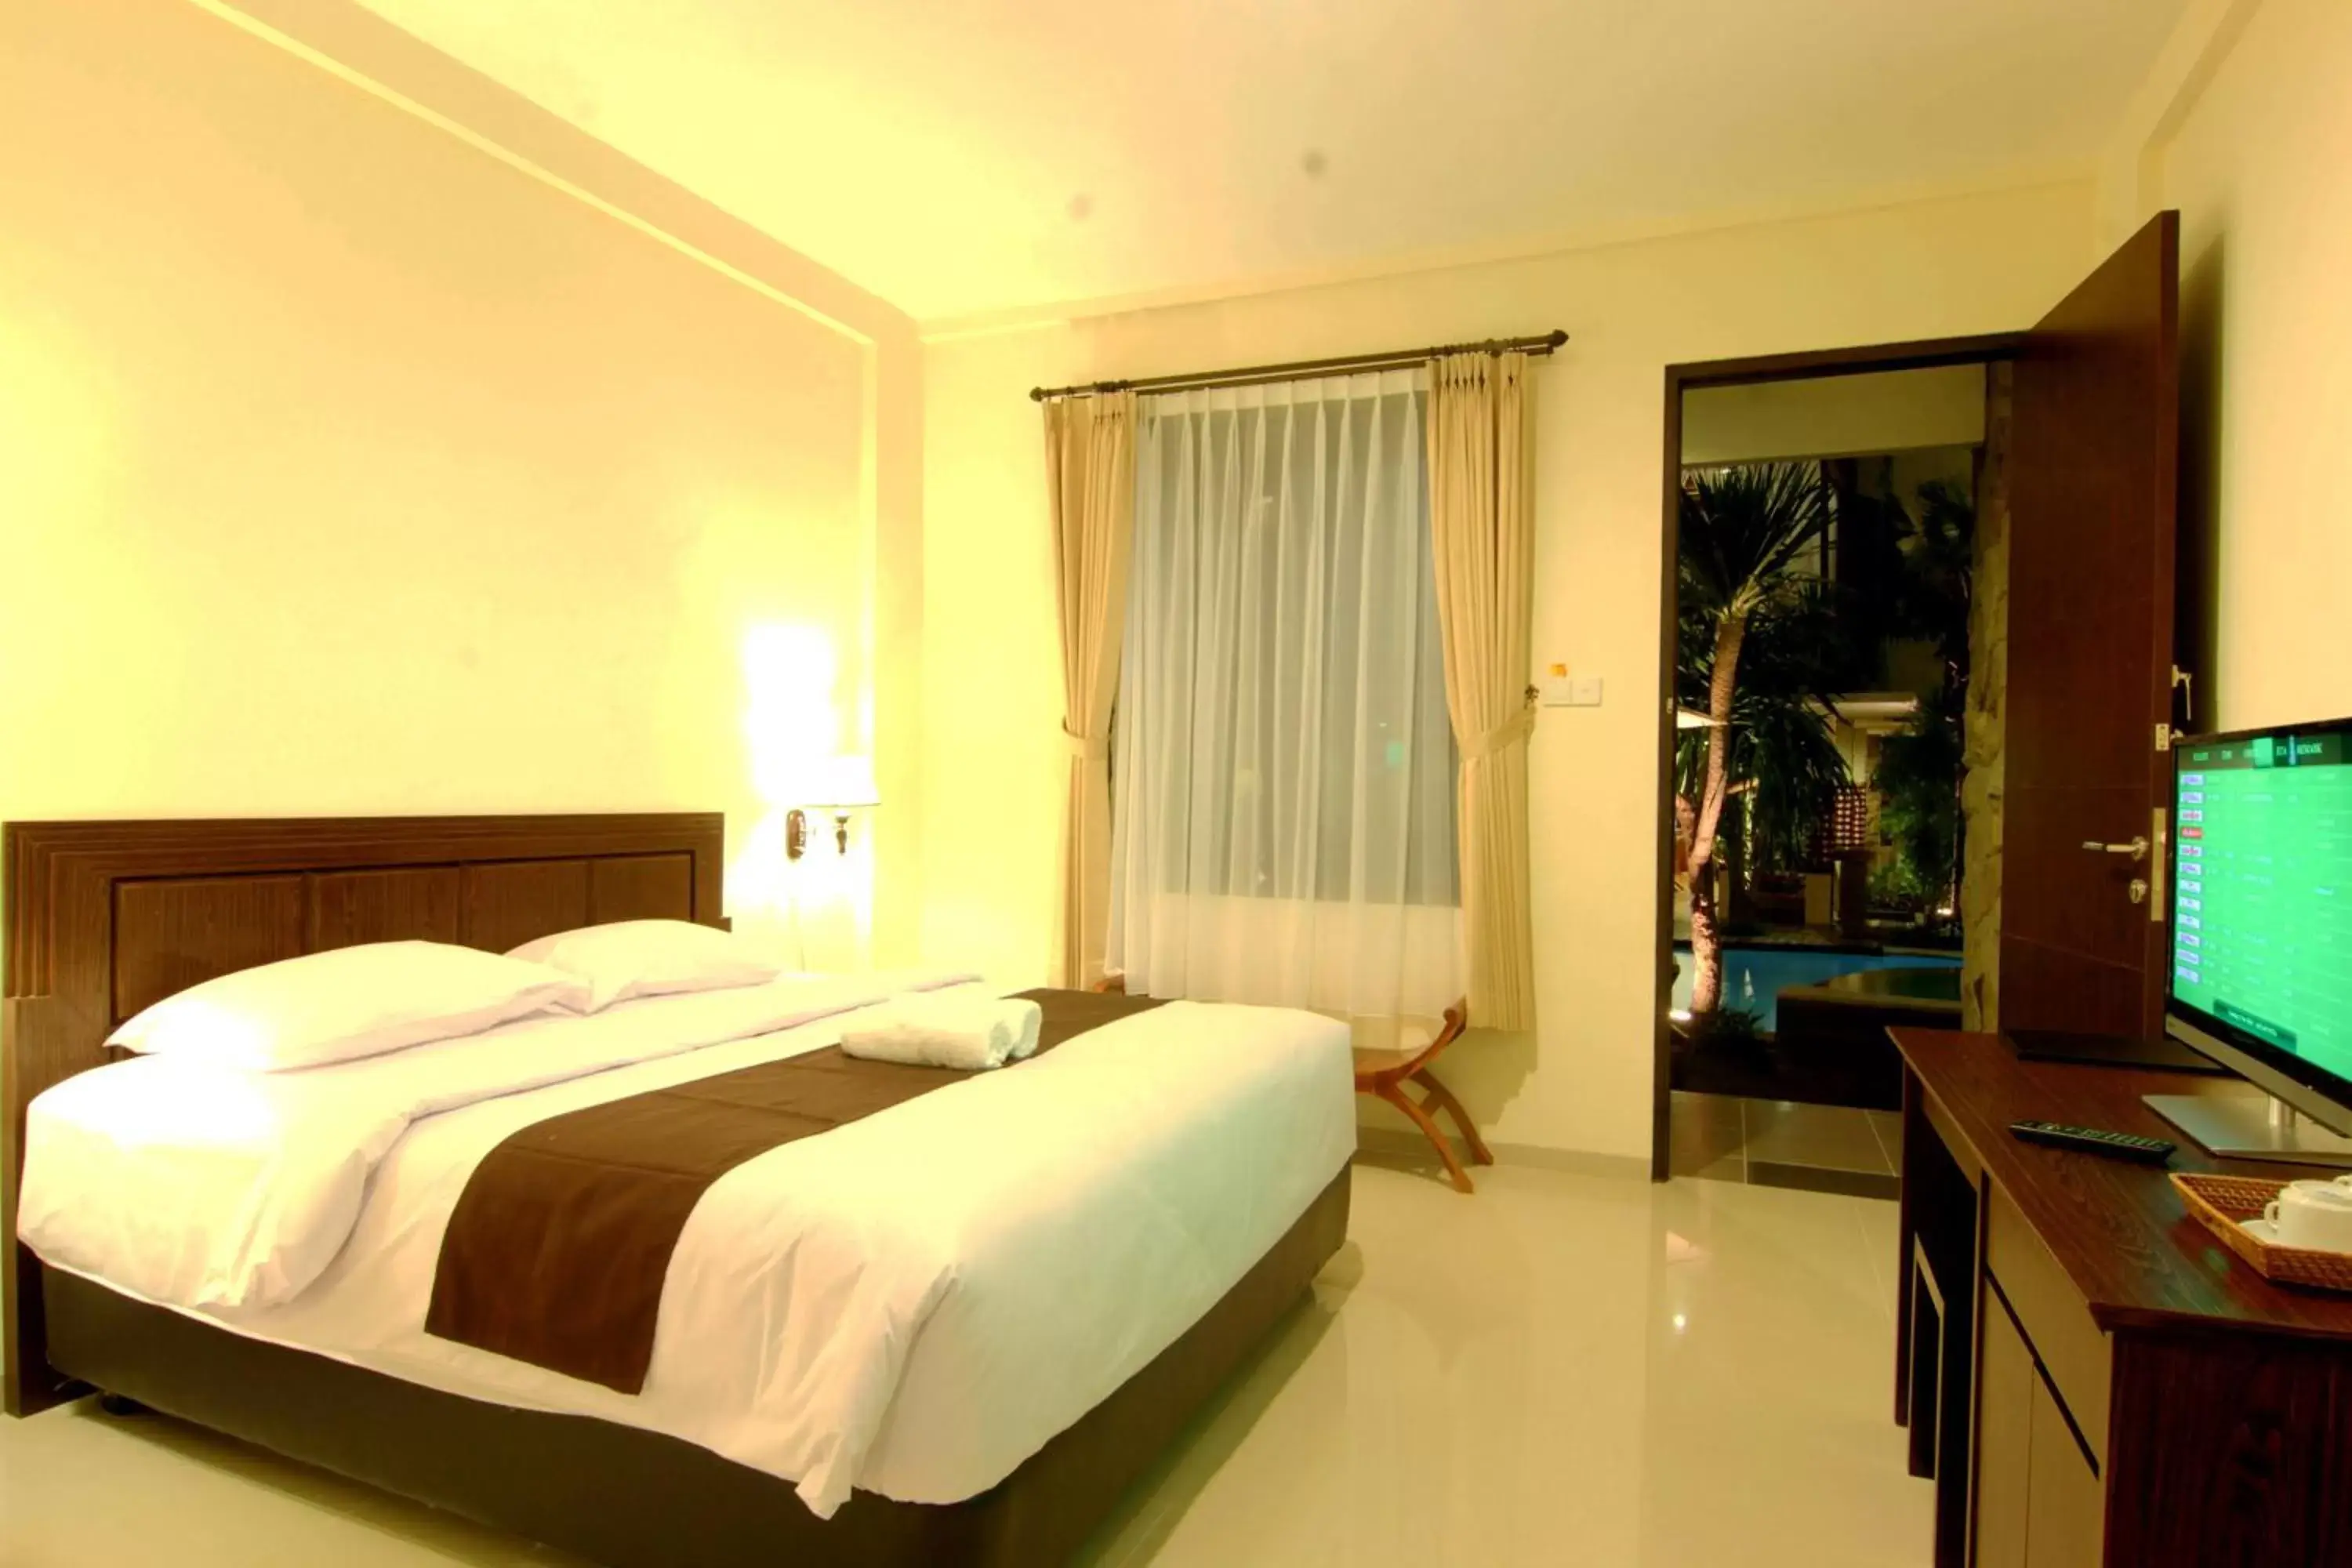 Bedroom, Bed in Manggar Indonesia Hotel